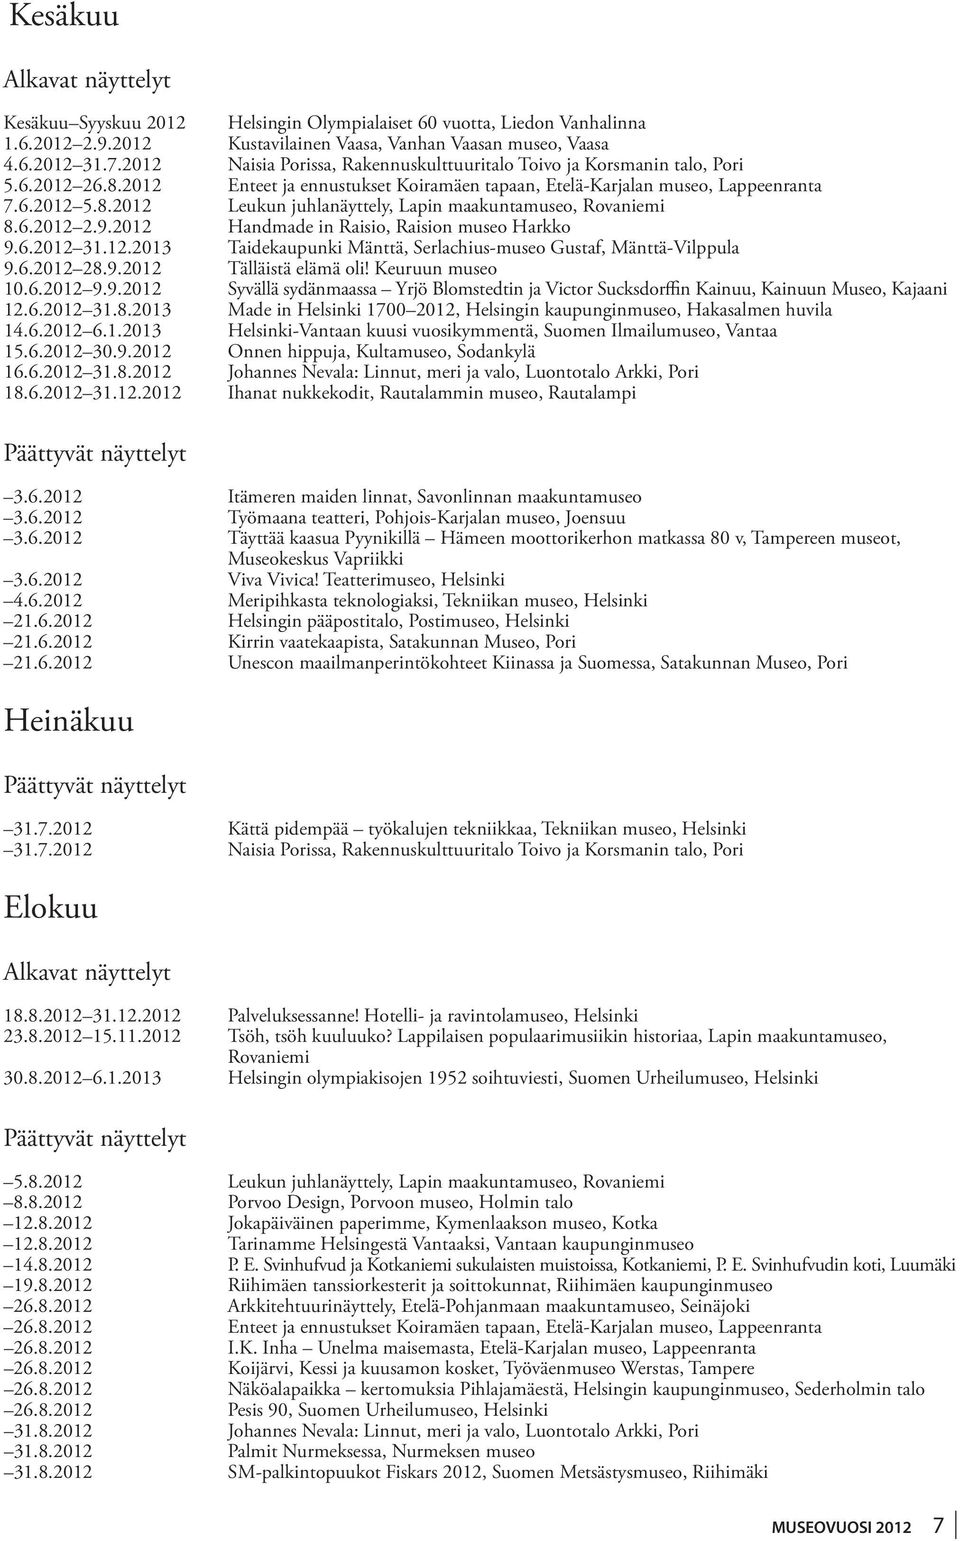 8.6.2012 2.9.2012 Handmade in Raisio, Raision museo Harkko. 9.6.2012 31.12.2013 Taidekaupunki Mänttä, Serlachius-museo Gustaf, Mänttä-Vilppula. 9.6.2012 28.9.2012 Tälläistä elämä oli! Keuruun museo.